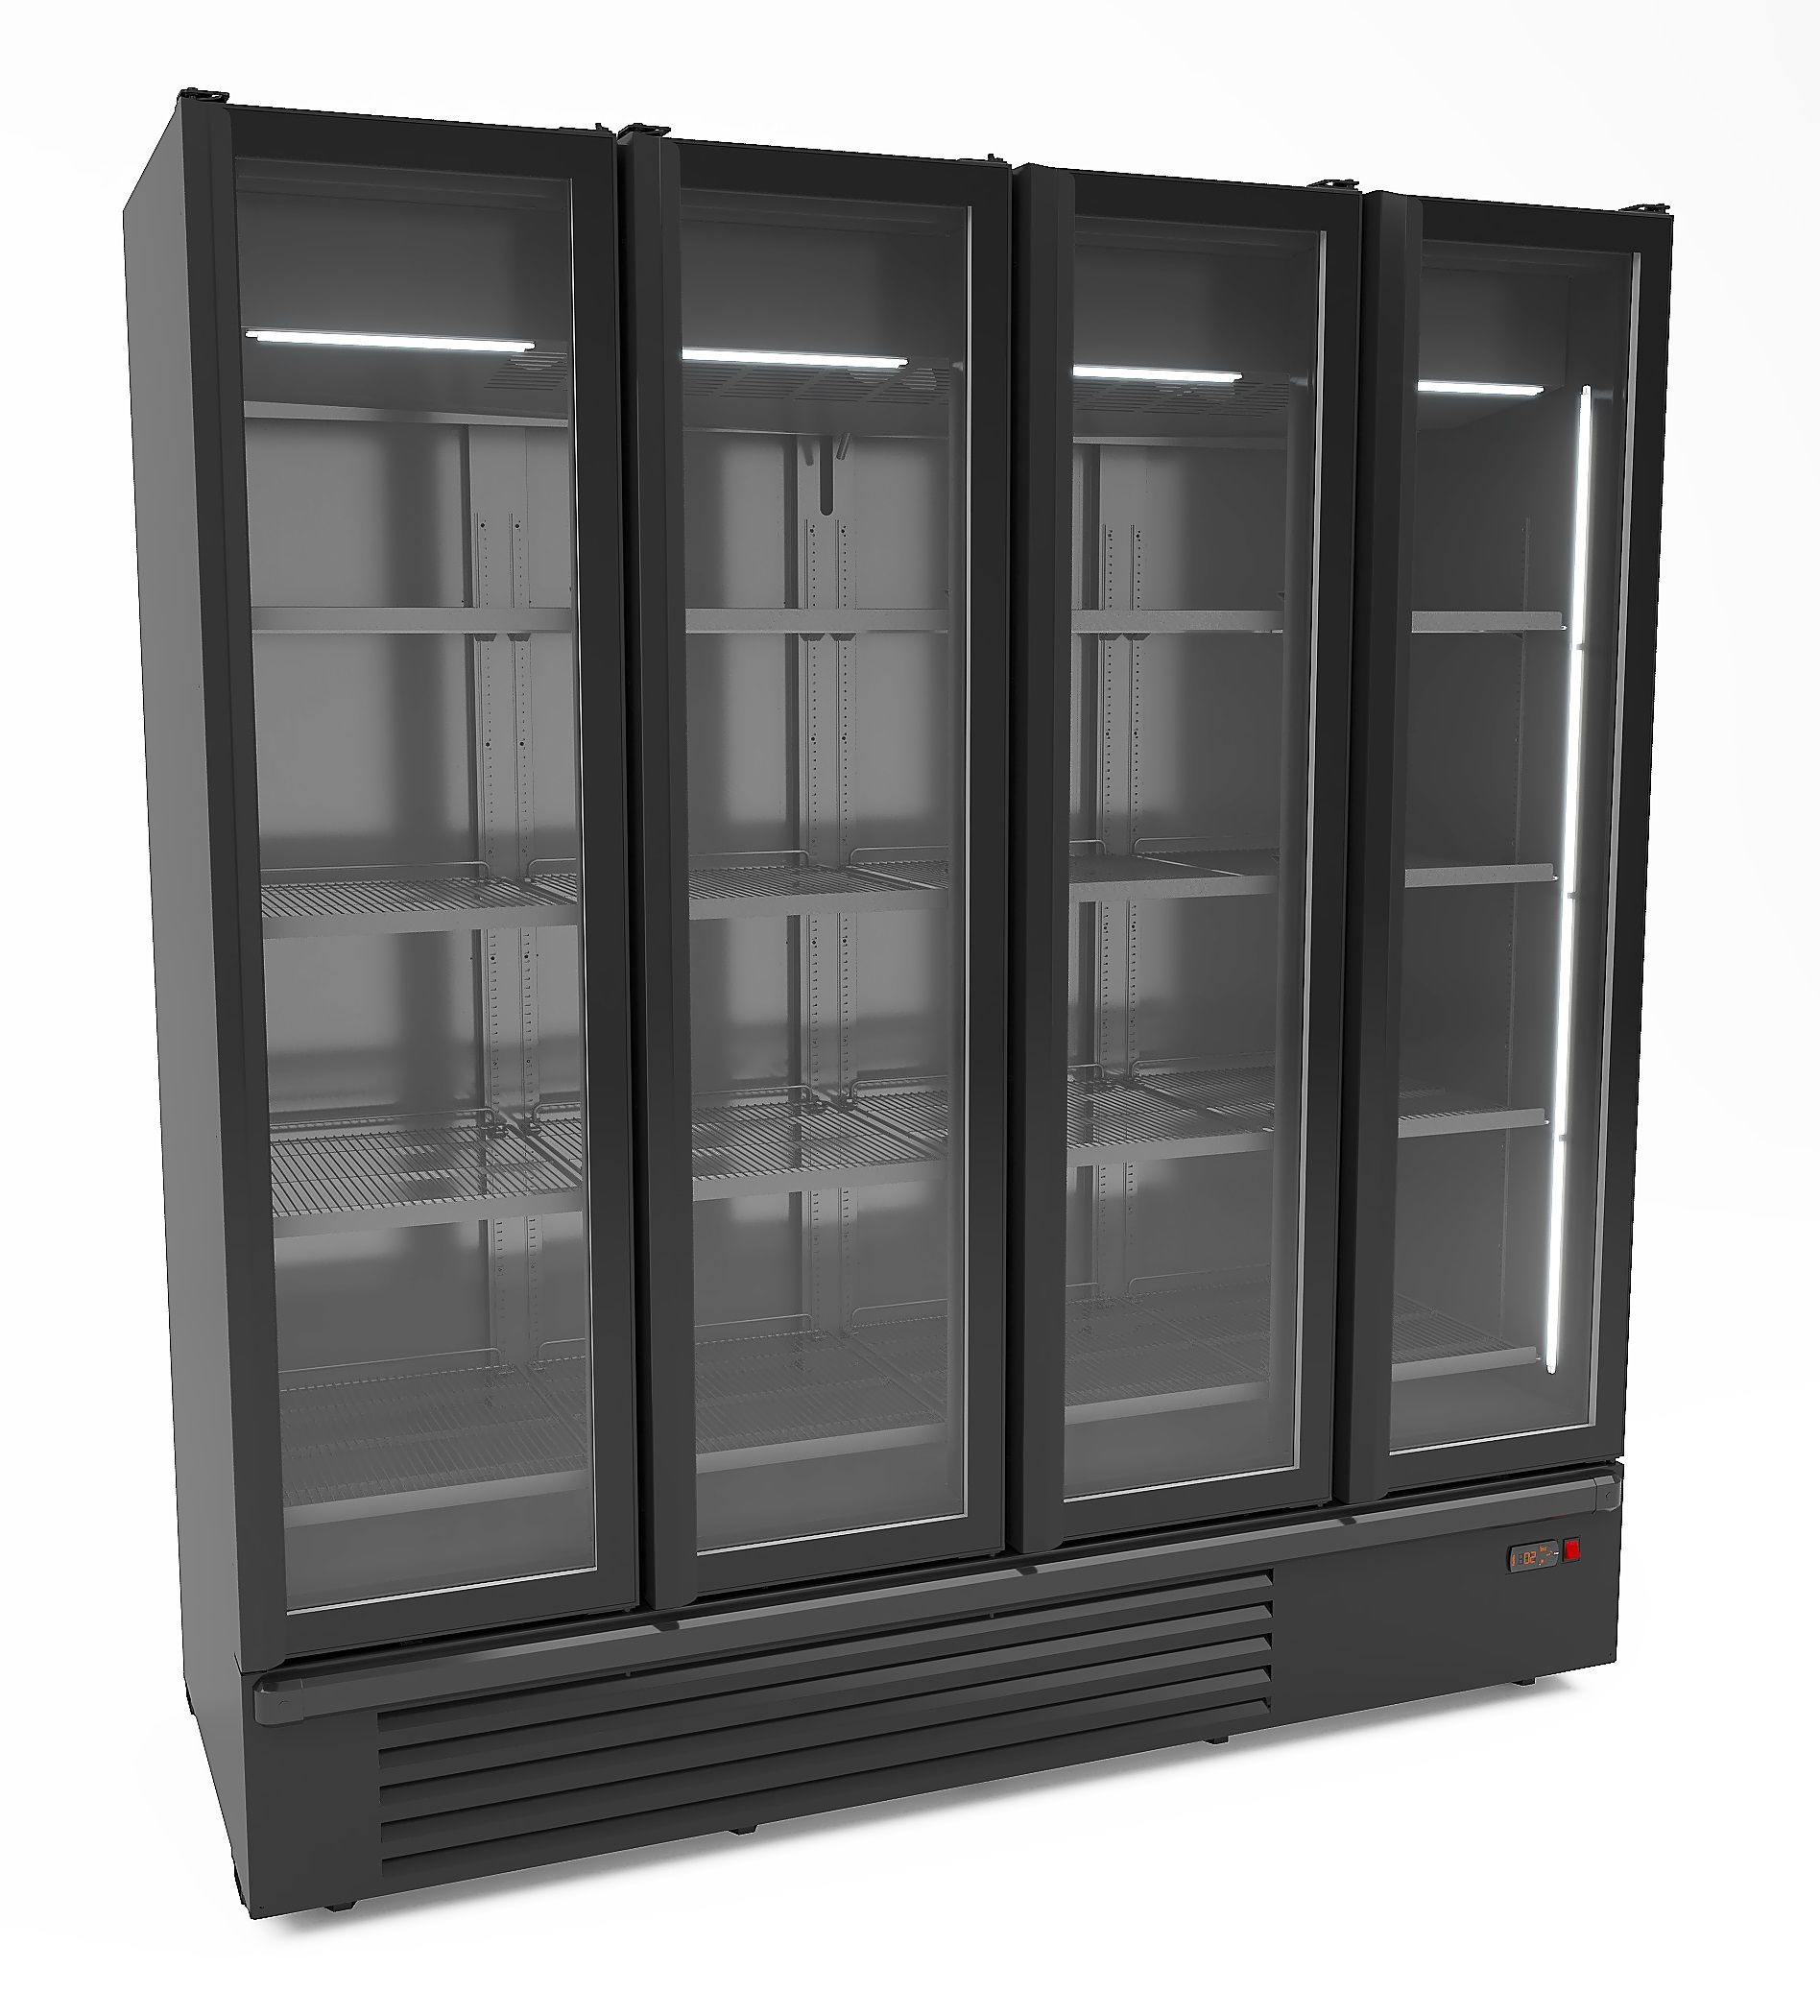 CombiSteel Refrigertor 4 Glass Doors Black 1850L